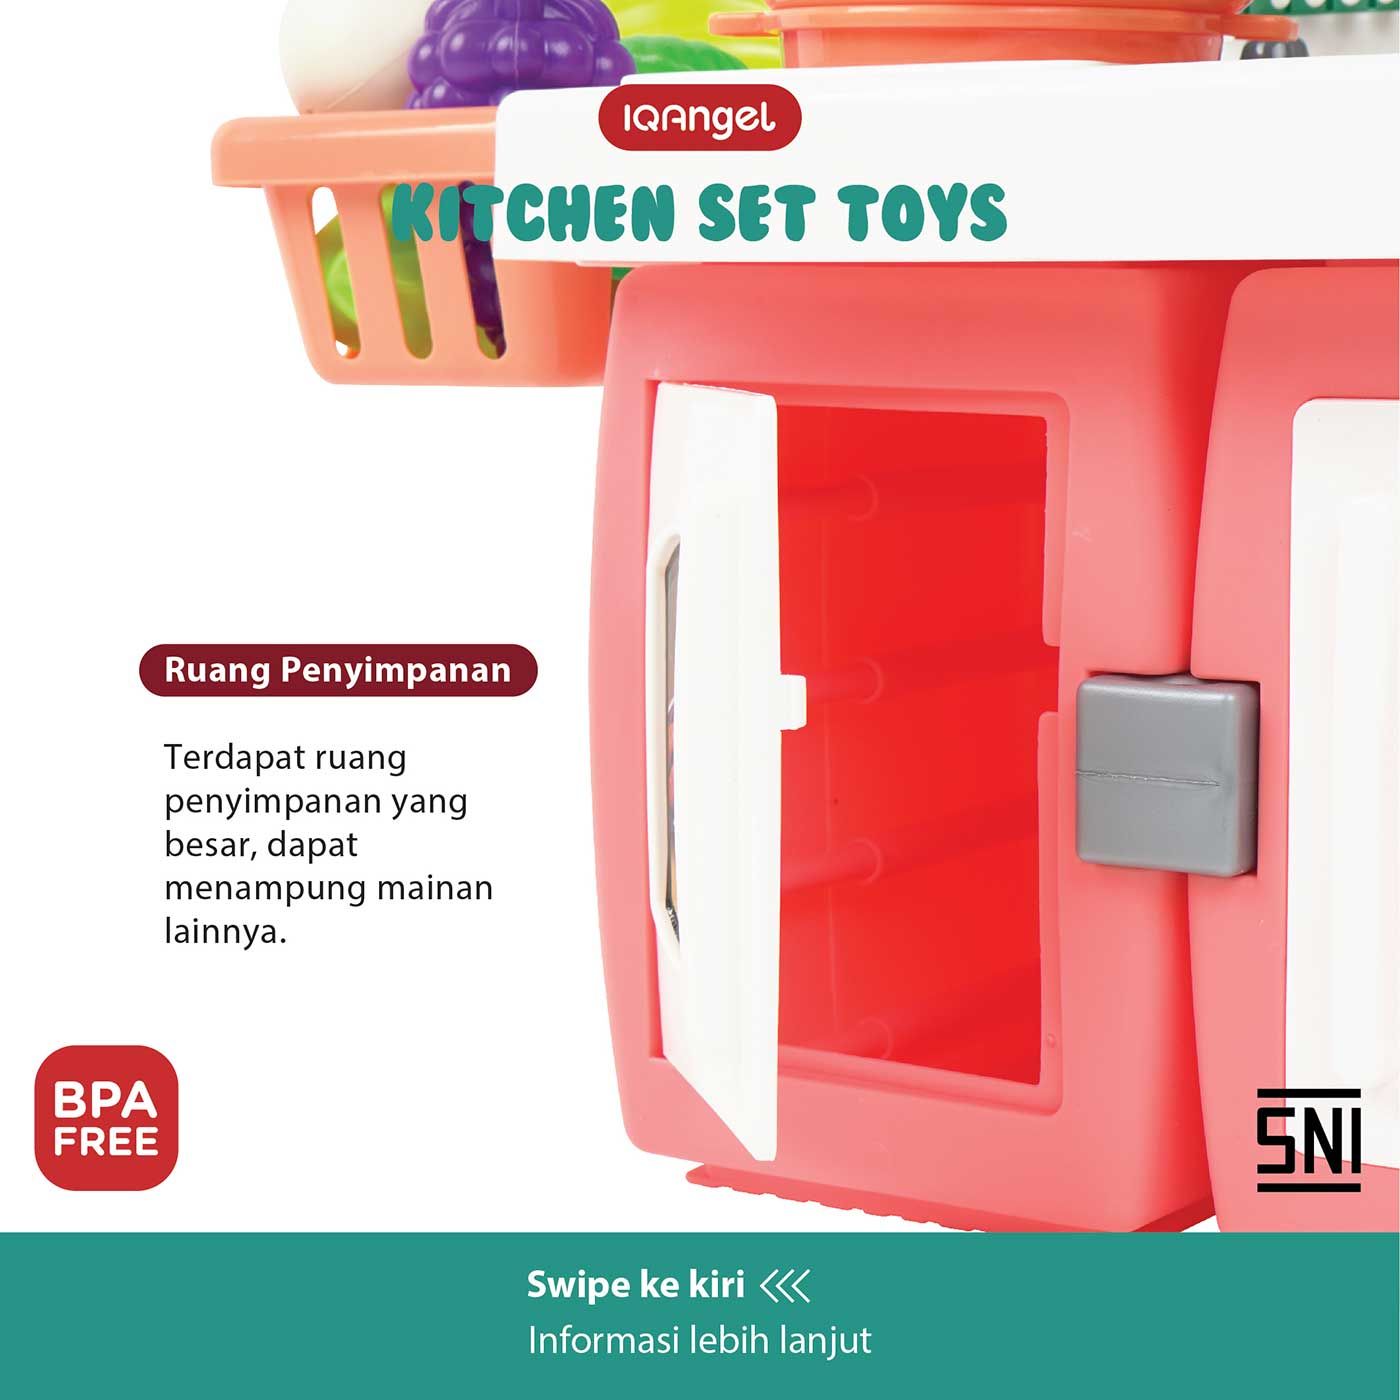 IQ Angel Kitchen Set Toys - 6